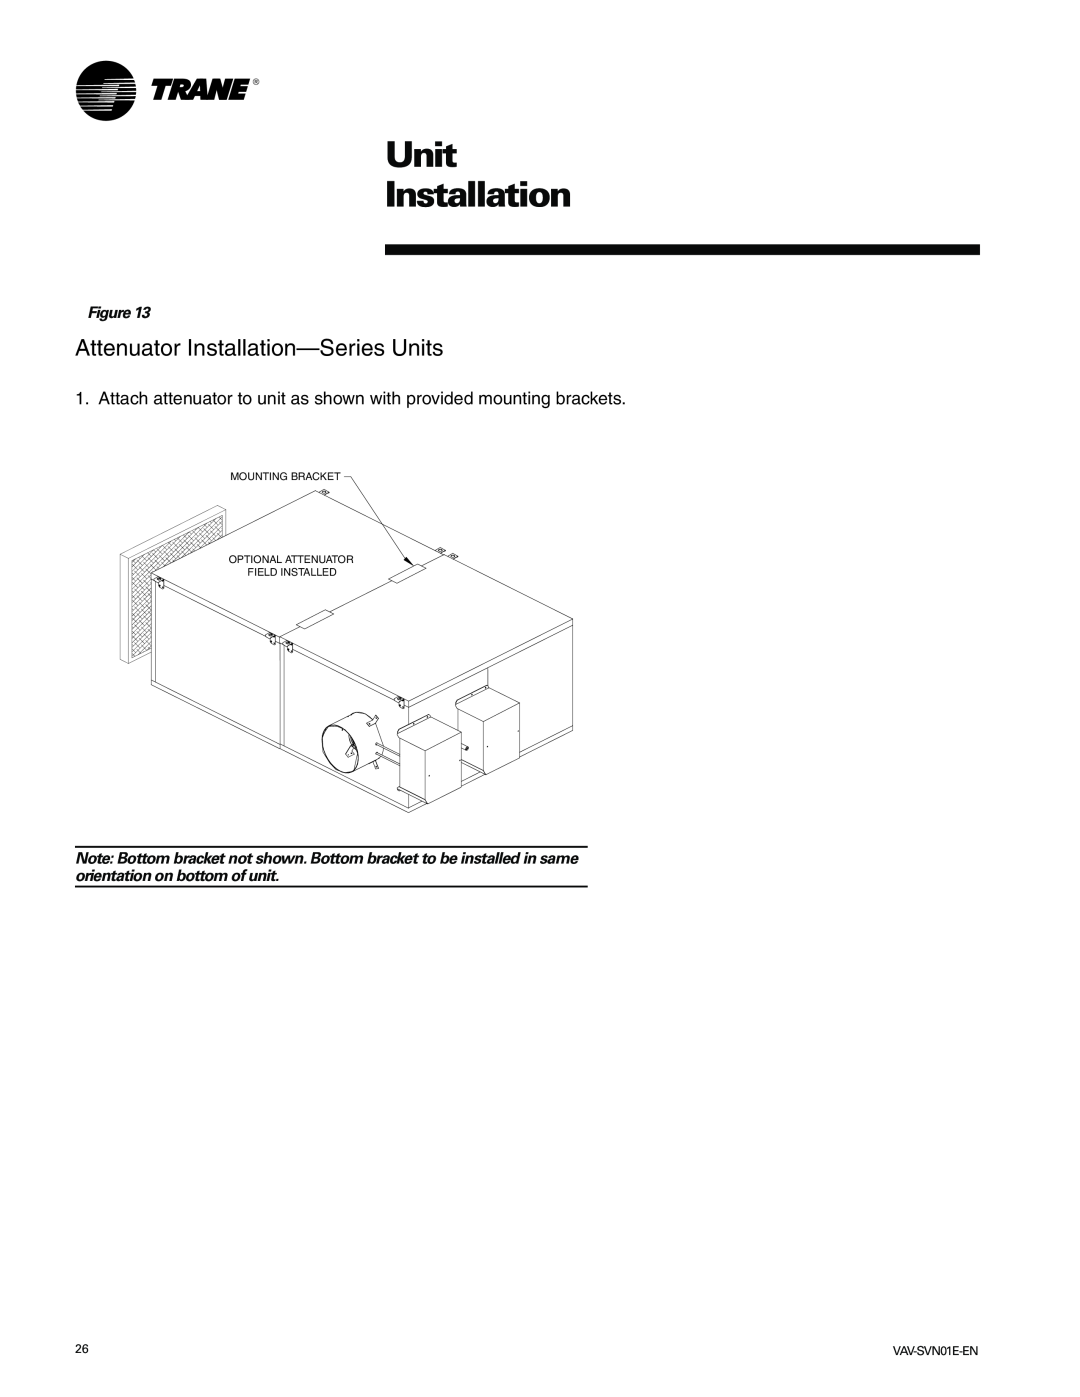 Trane VAV-SVN01E-EN, Trane manual Attenuator Installation-SeriesUnits, Unit Installation 